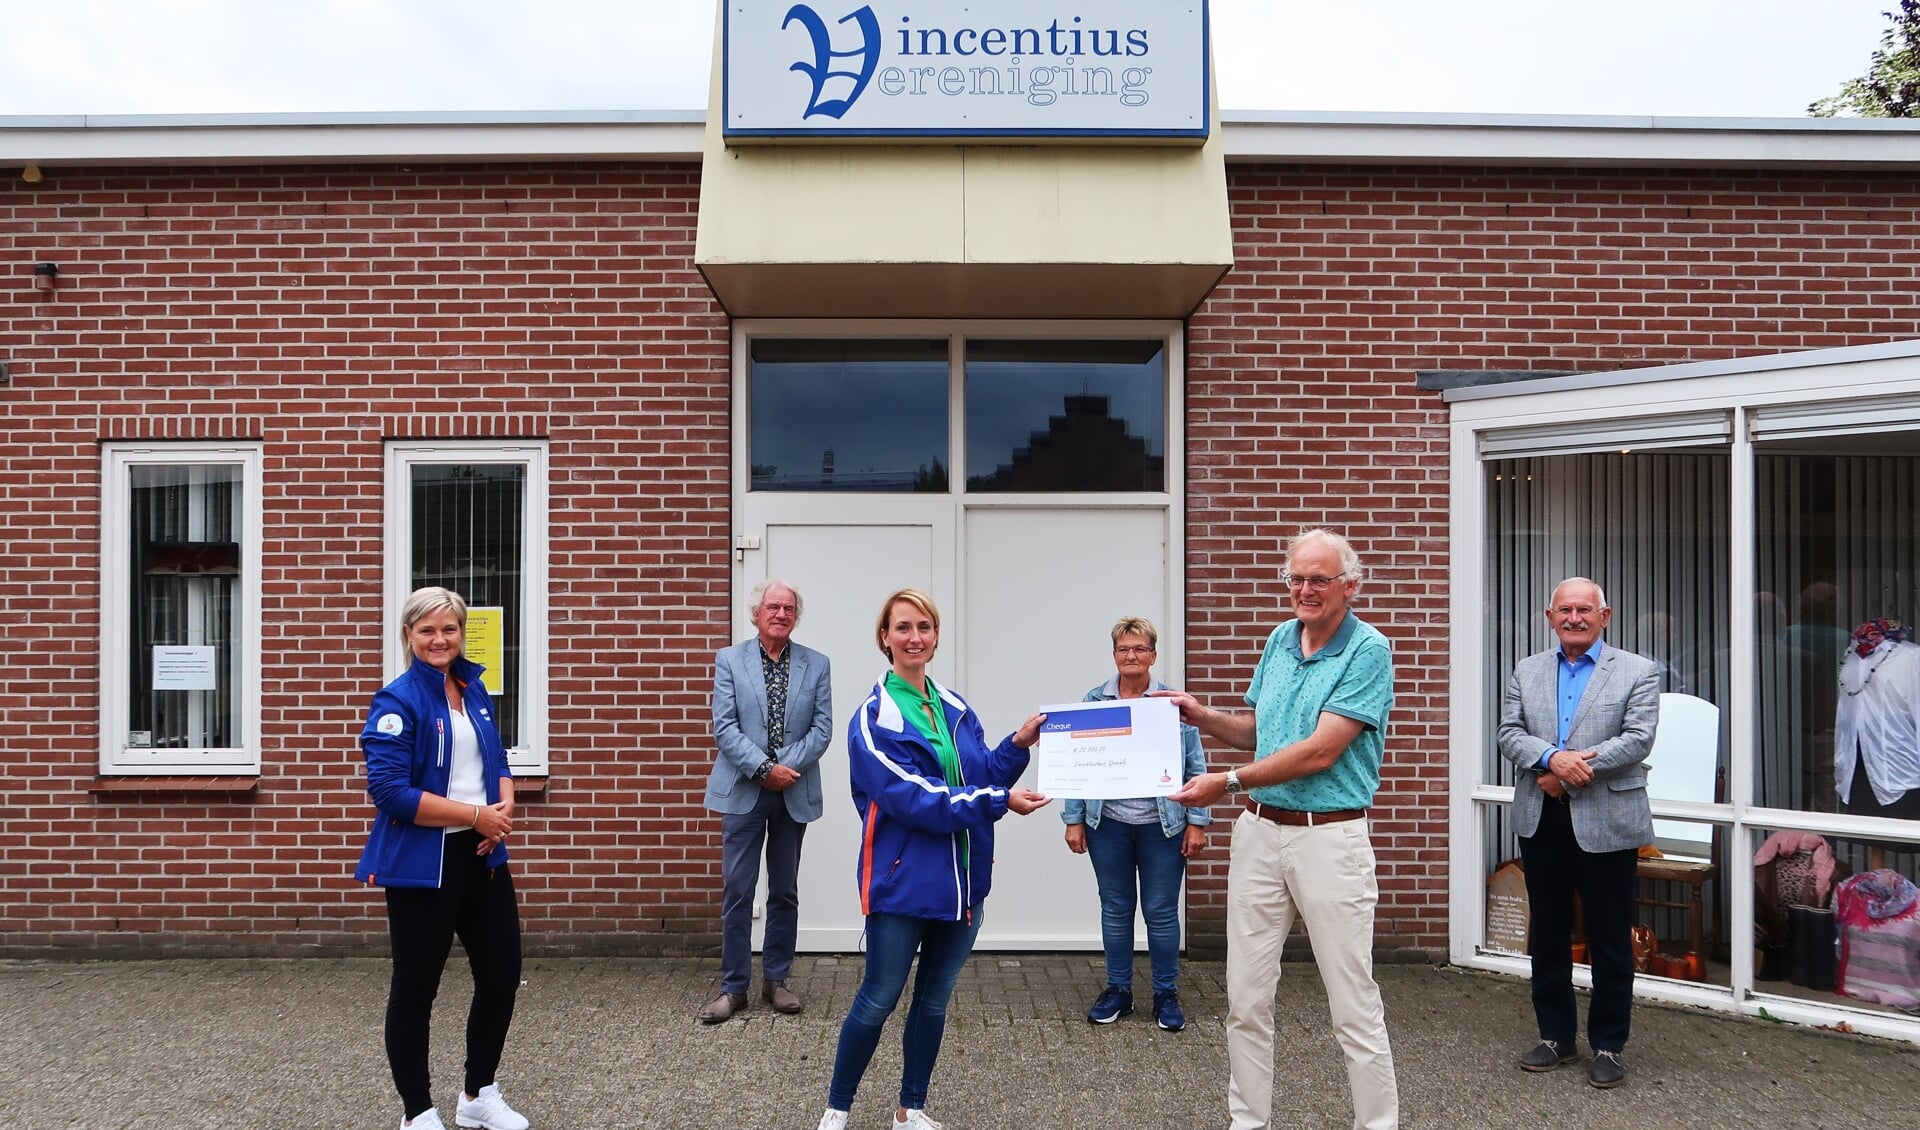 Gerard Kamp, voorzitter van de Vincentiusvereniging, neemt de Rabo-cheque in ontvangst van Marrit Heuzinkveld, terwijl Petra ter Bogt (geheel links) toekijkt. Foto: Theo Huijskes